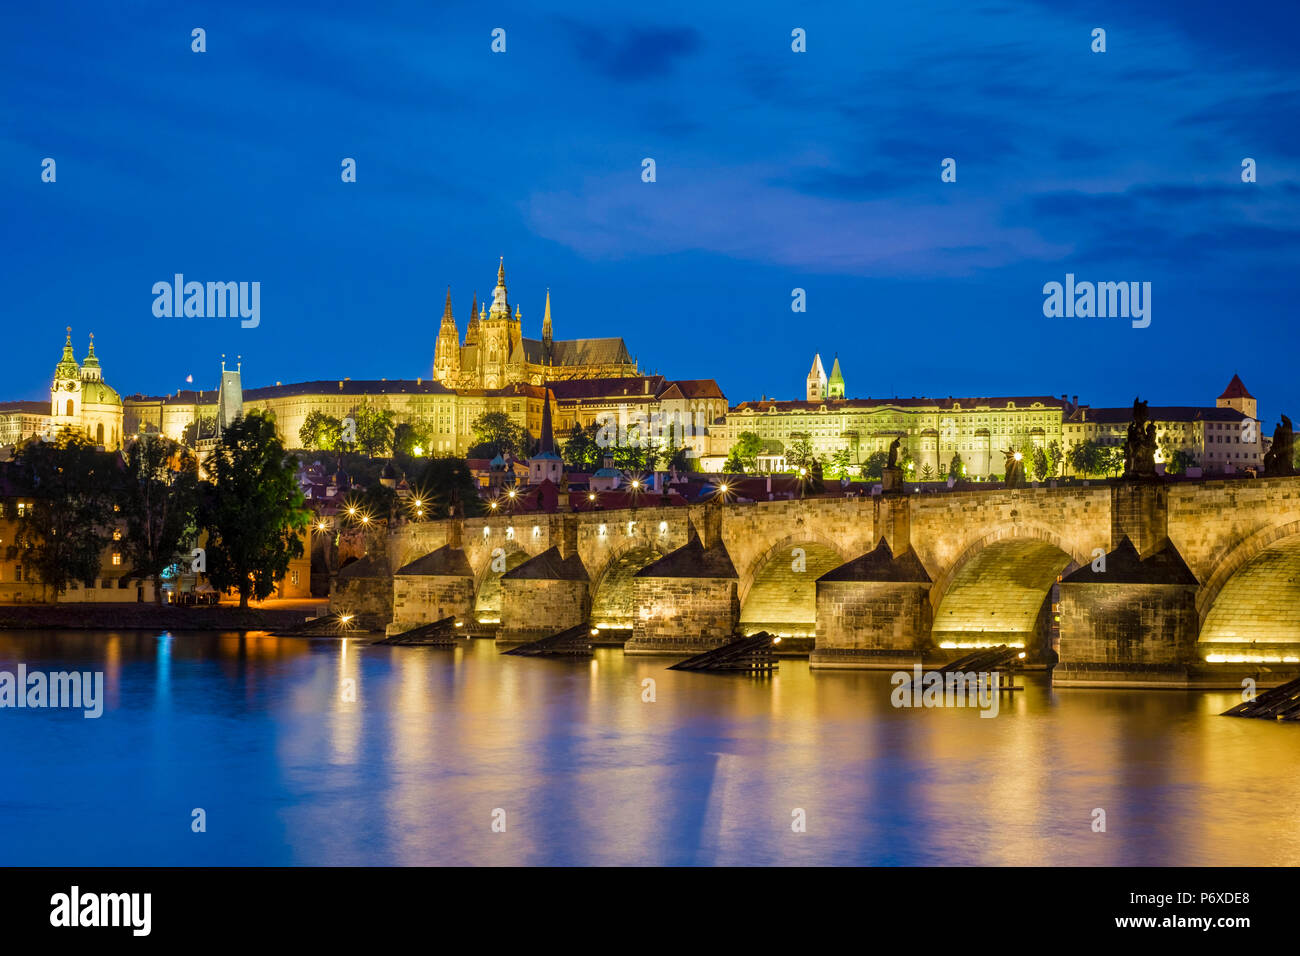 Tschechische Republik, Prag, Stare Mesto (Altstadt). Die Karlsbrücke und Prager Burg, Prazsky Hrad, an der Moldau in der Abenddämmerung. Stockfoto